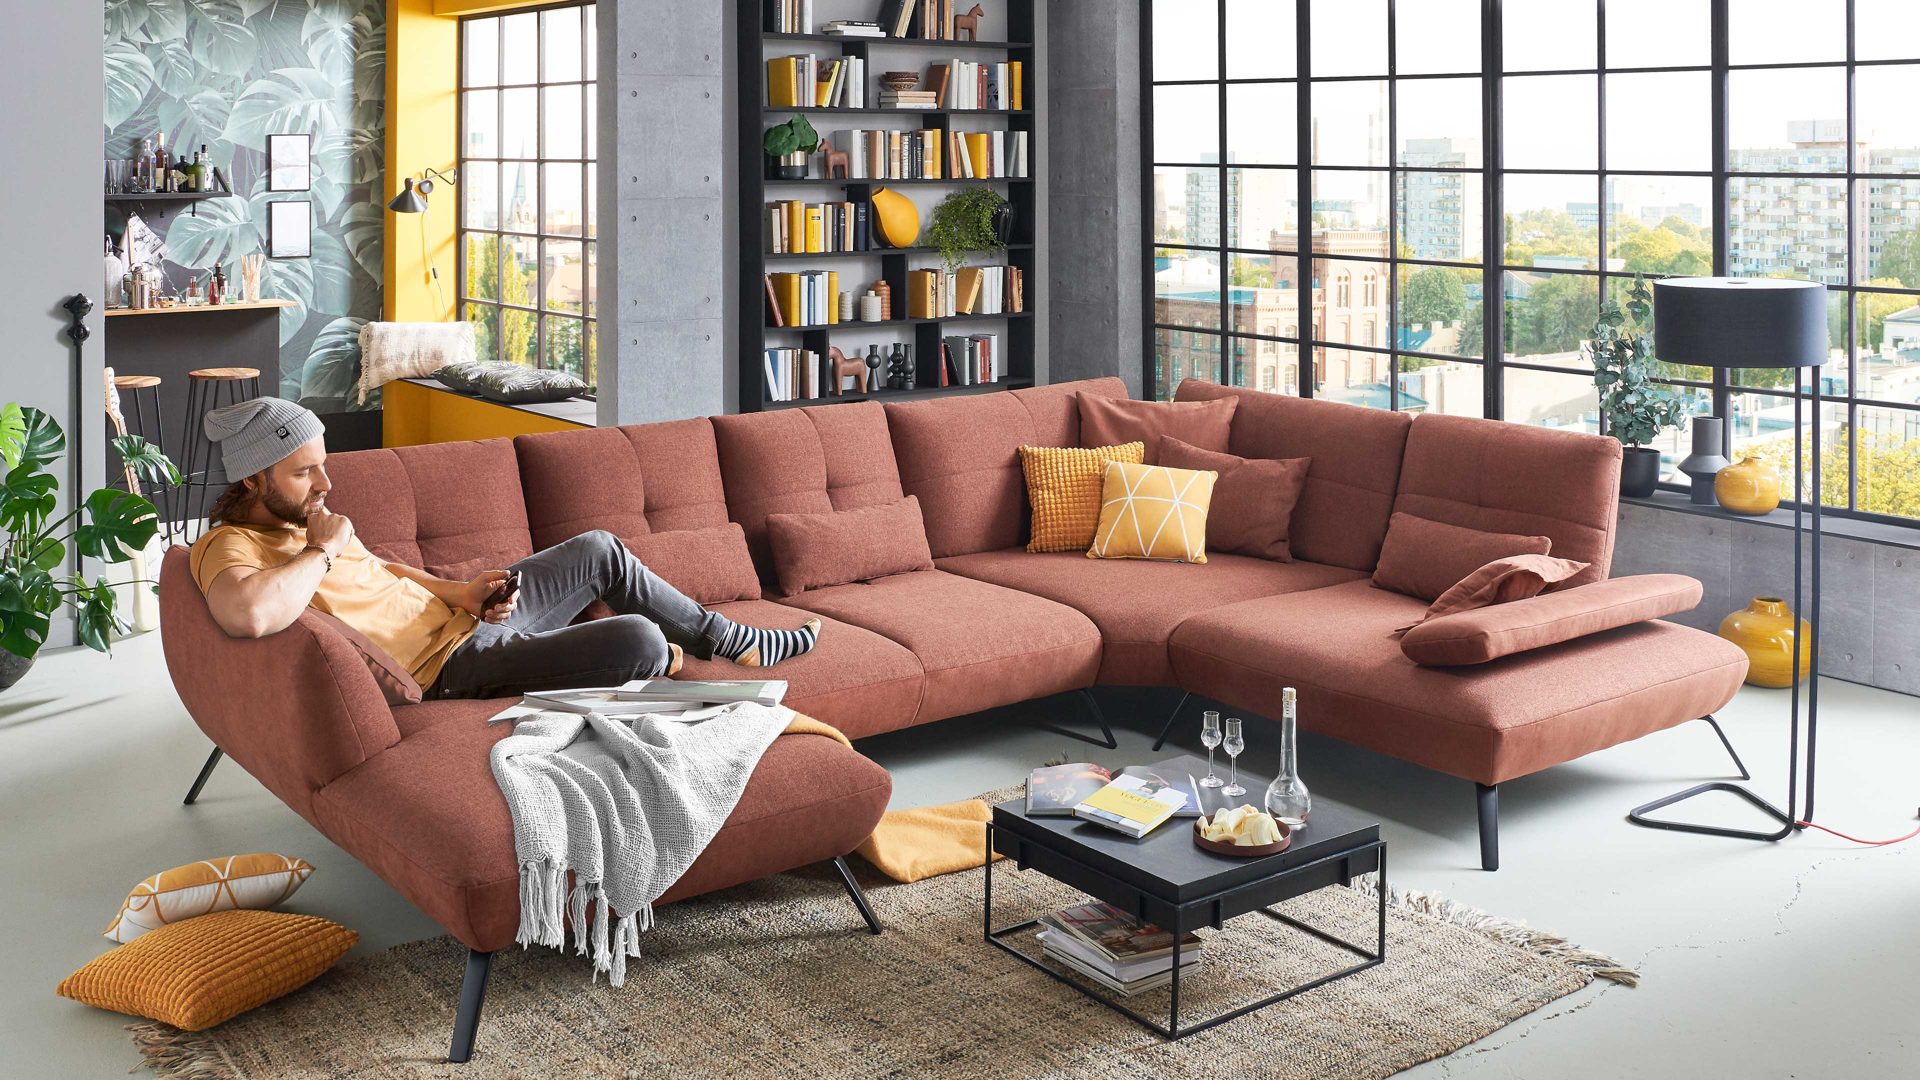 Wohnkauf Zeller Weilburg, Möbel A-Z, Sofa + Couch